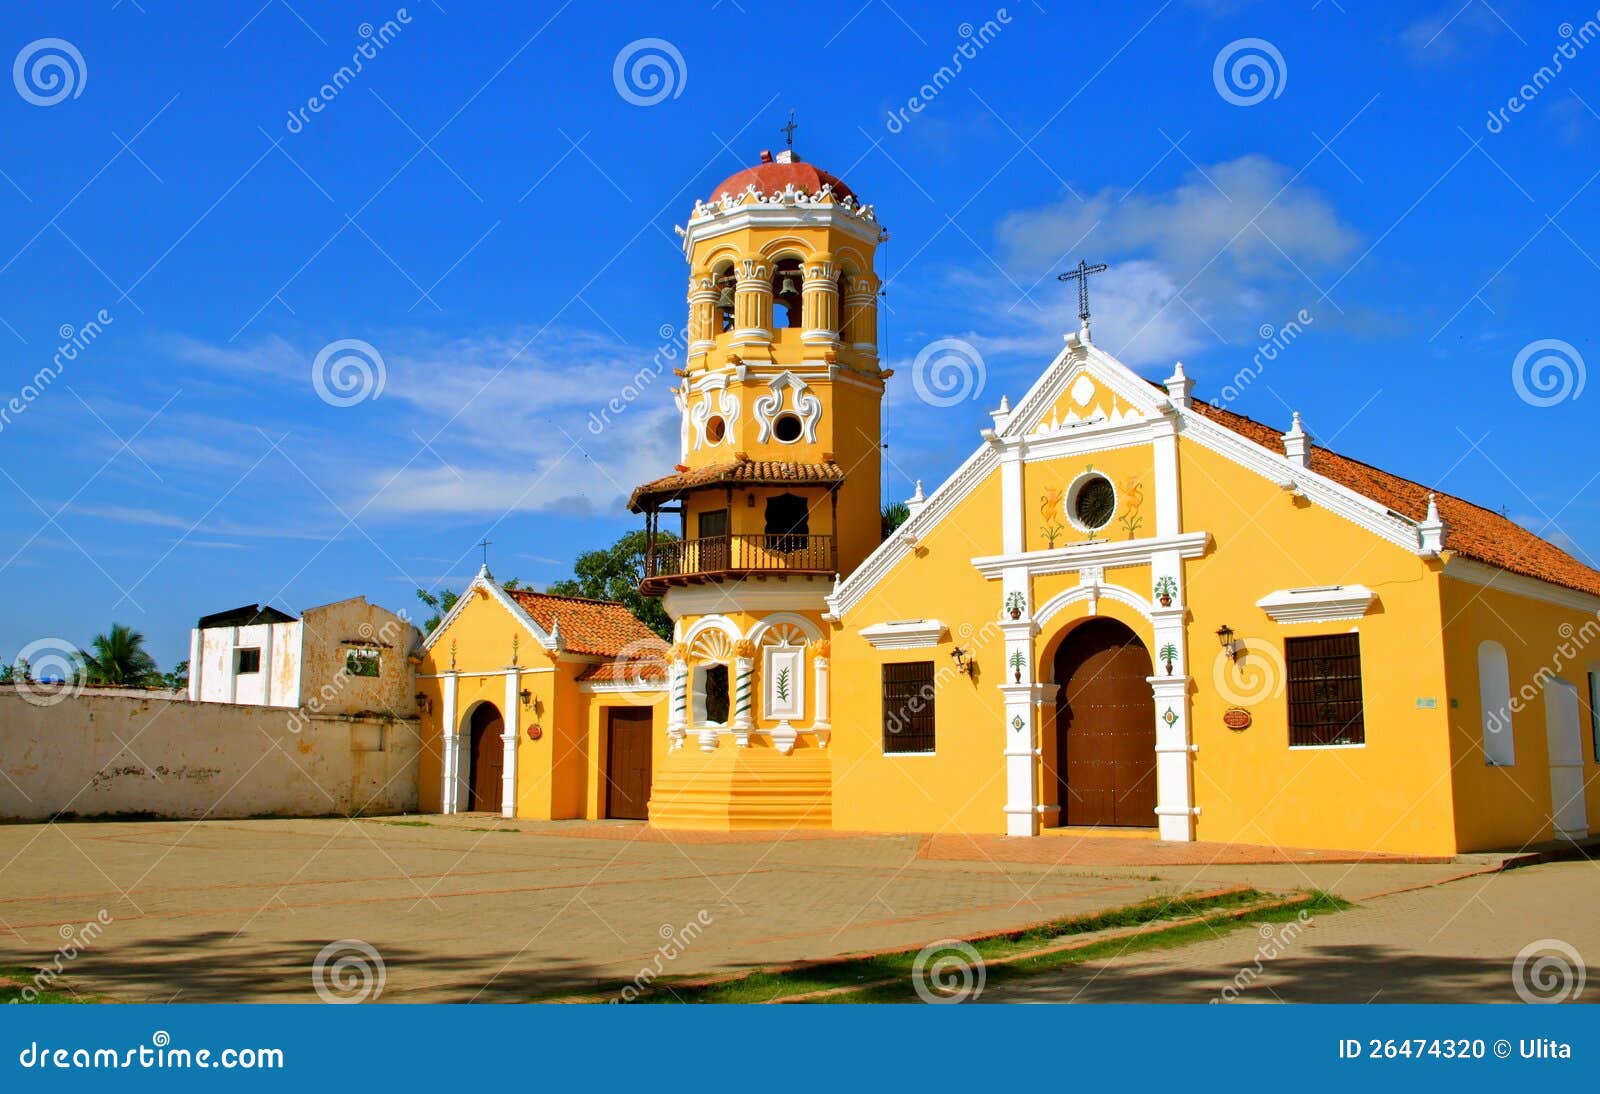 santa barbara church, mompos, colombia